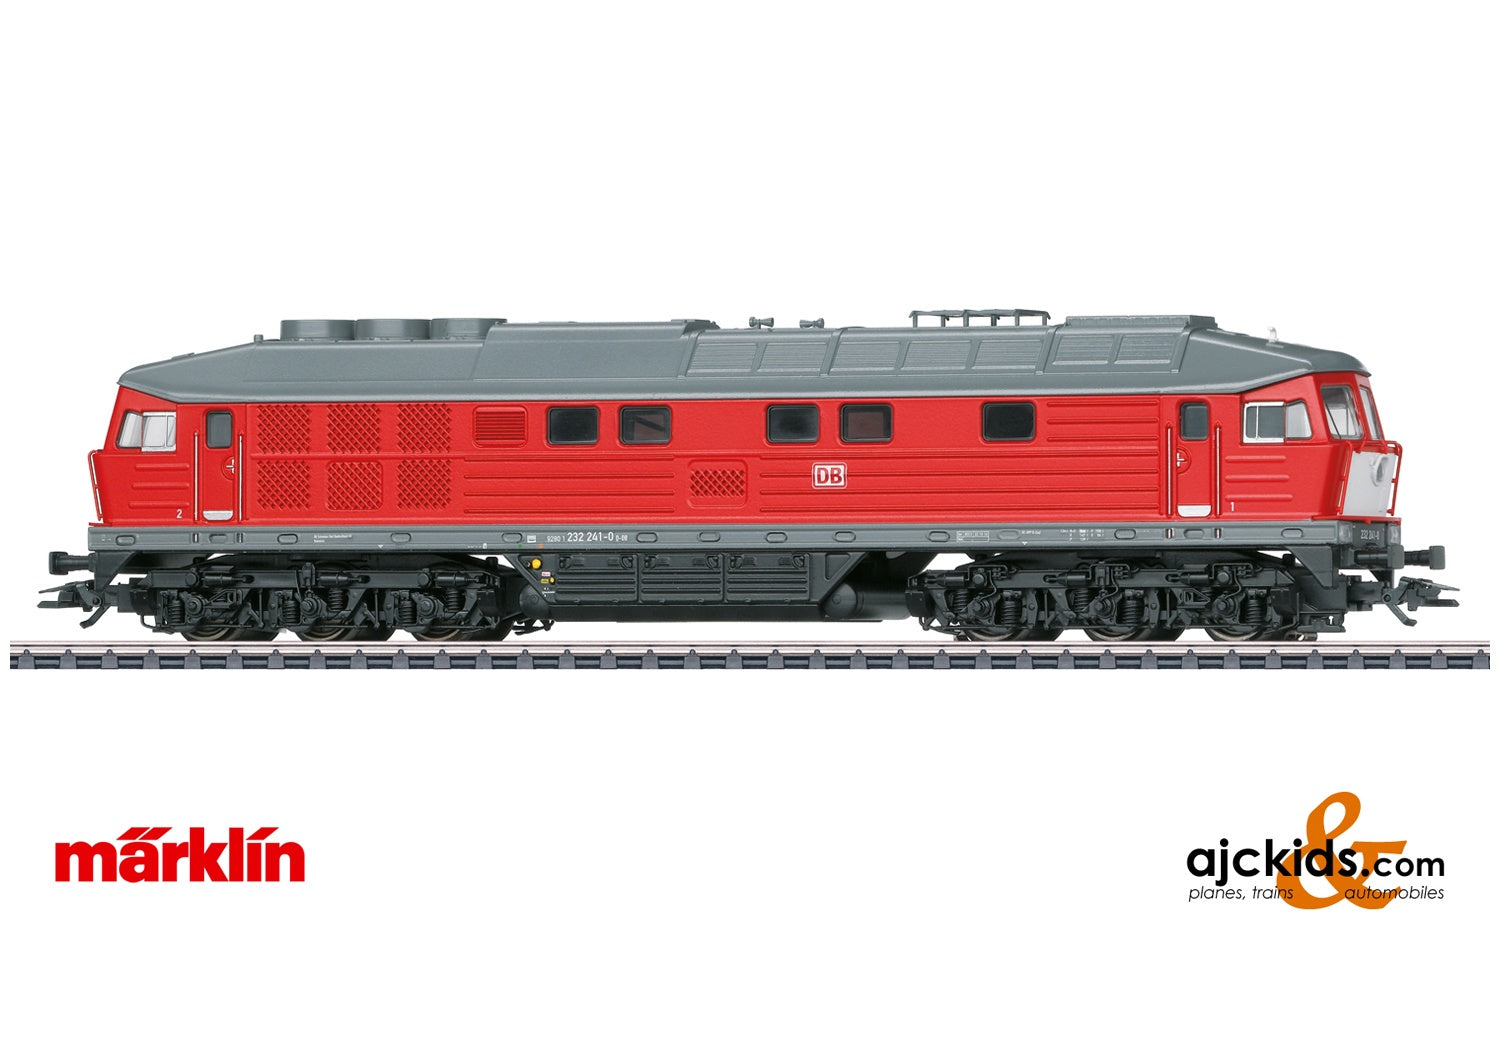 Marklin 36435 - Class 232 Diesel Locomotive